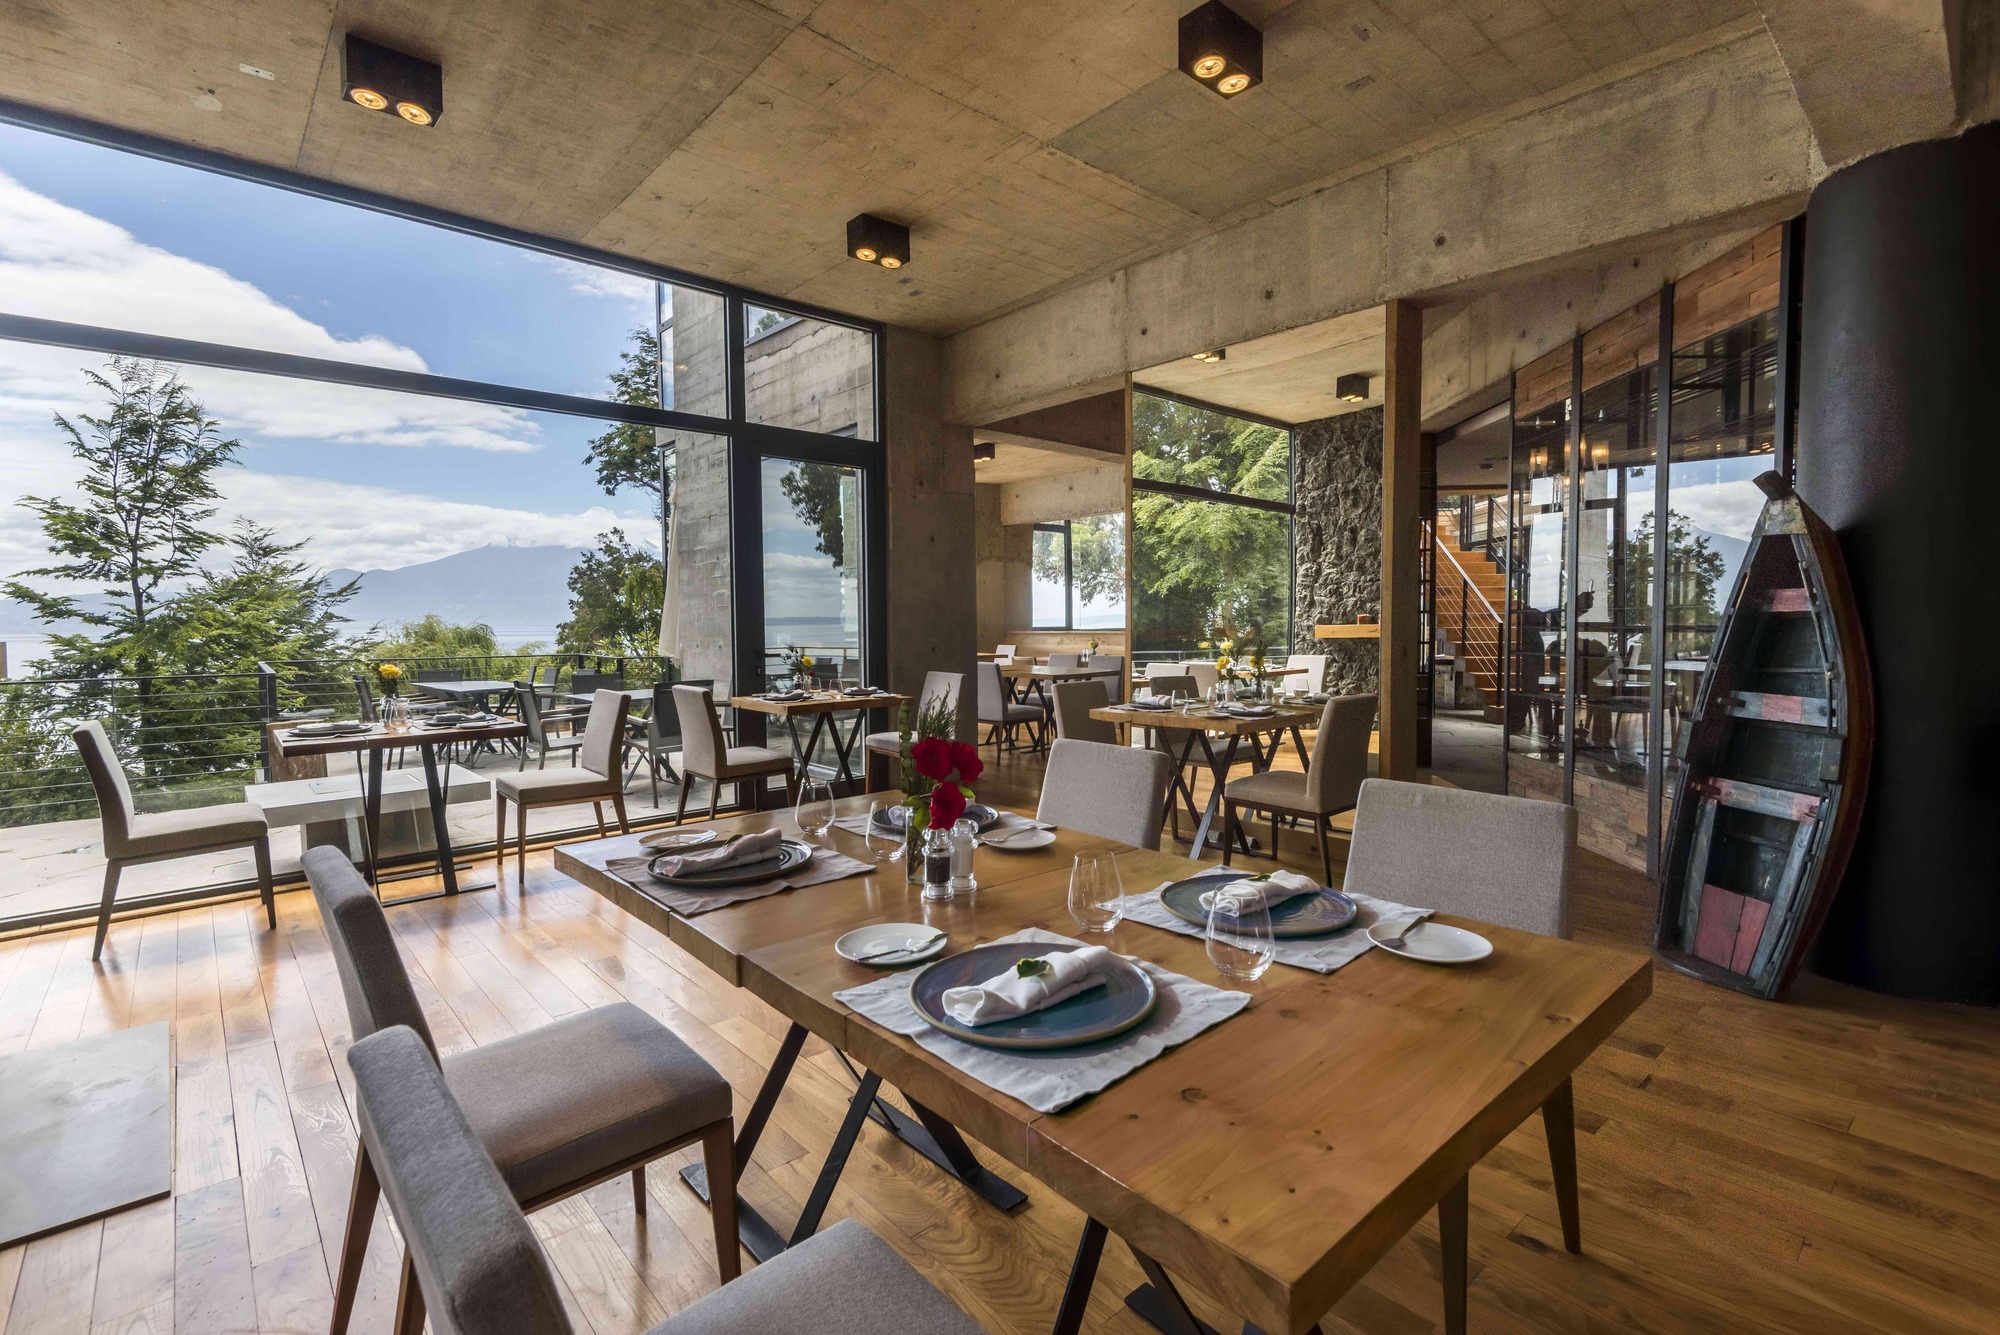 Restaurante del hotel Awa, a orillas del lago Llanquihue.